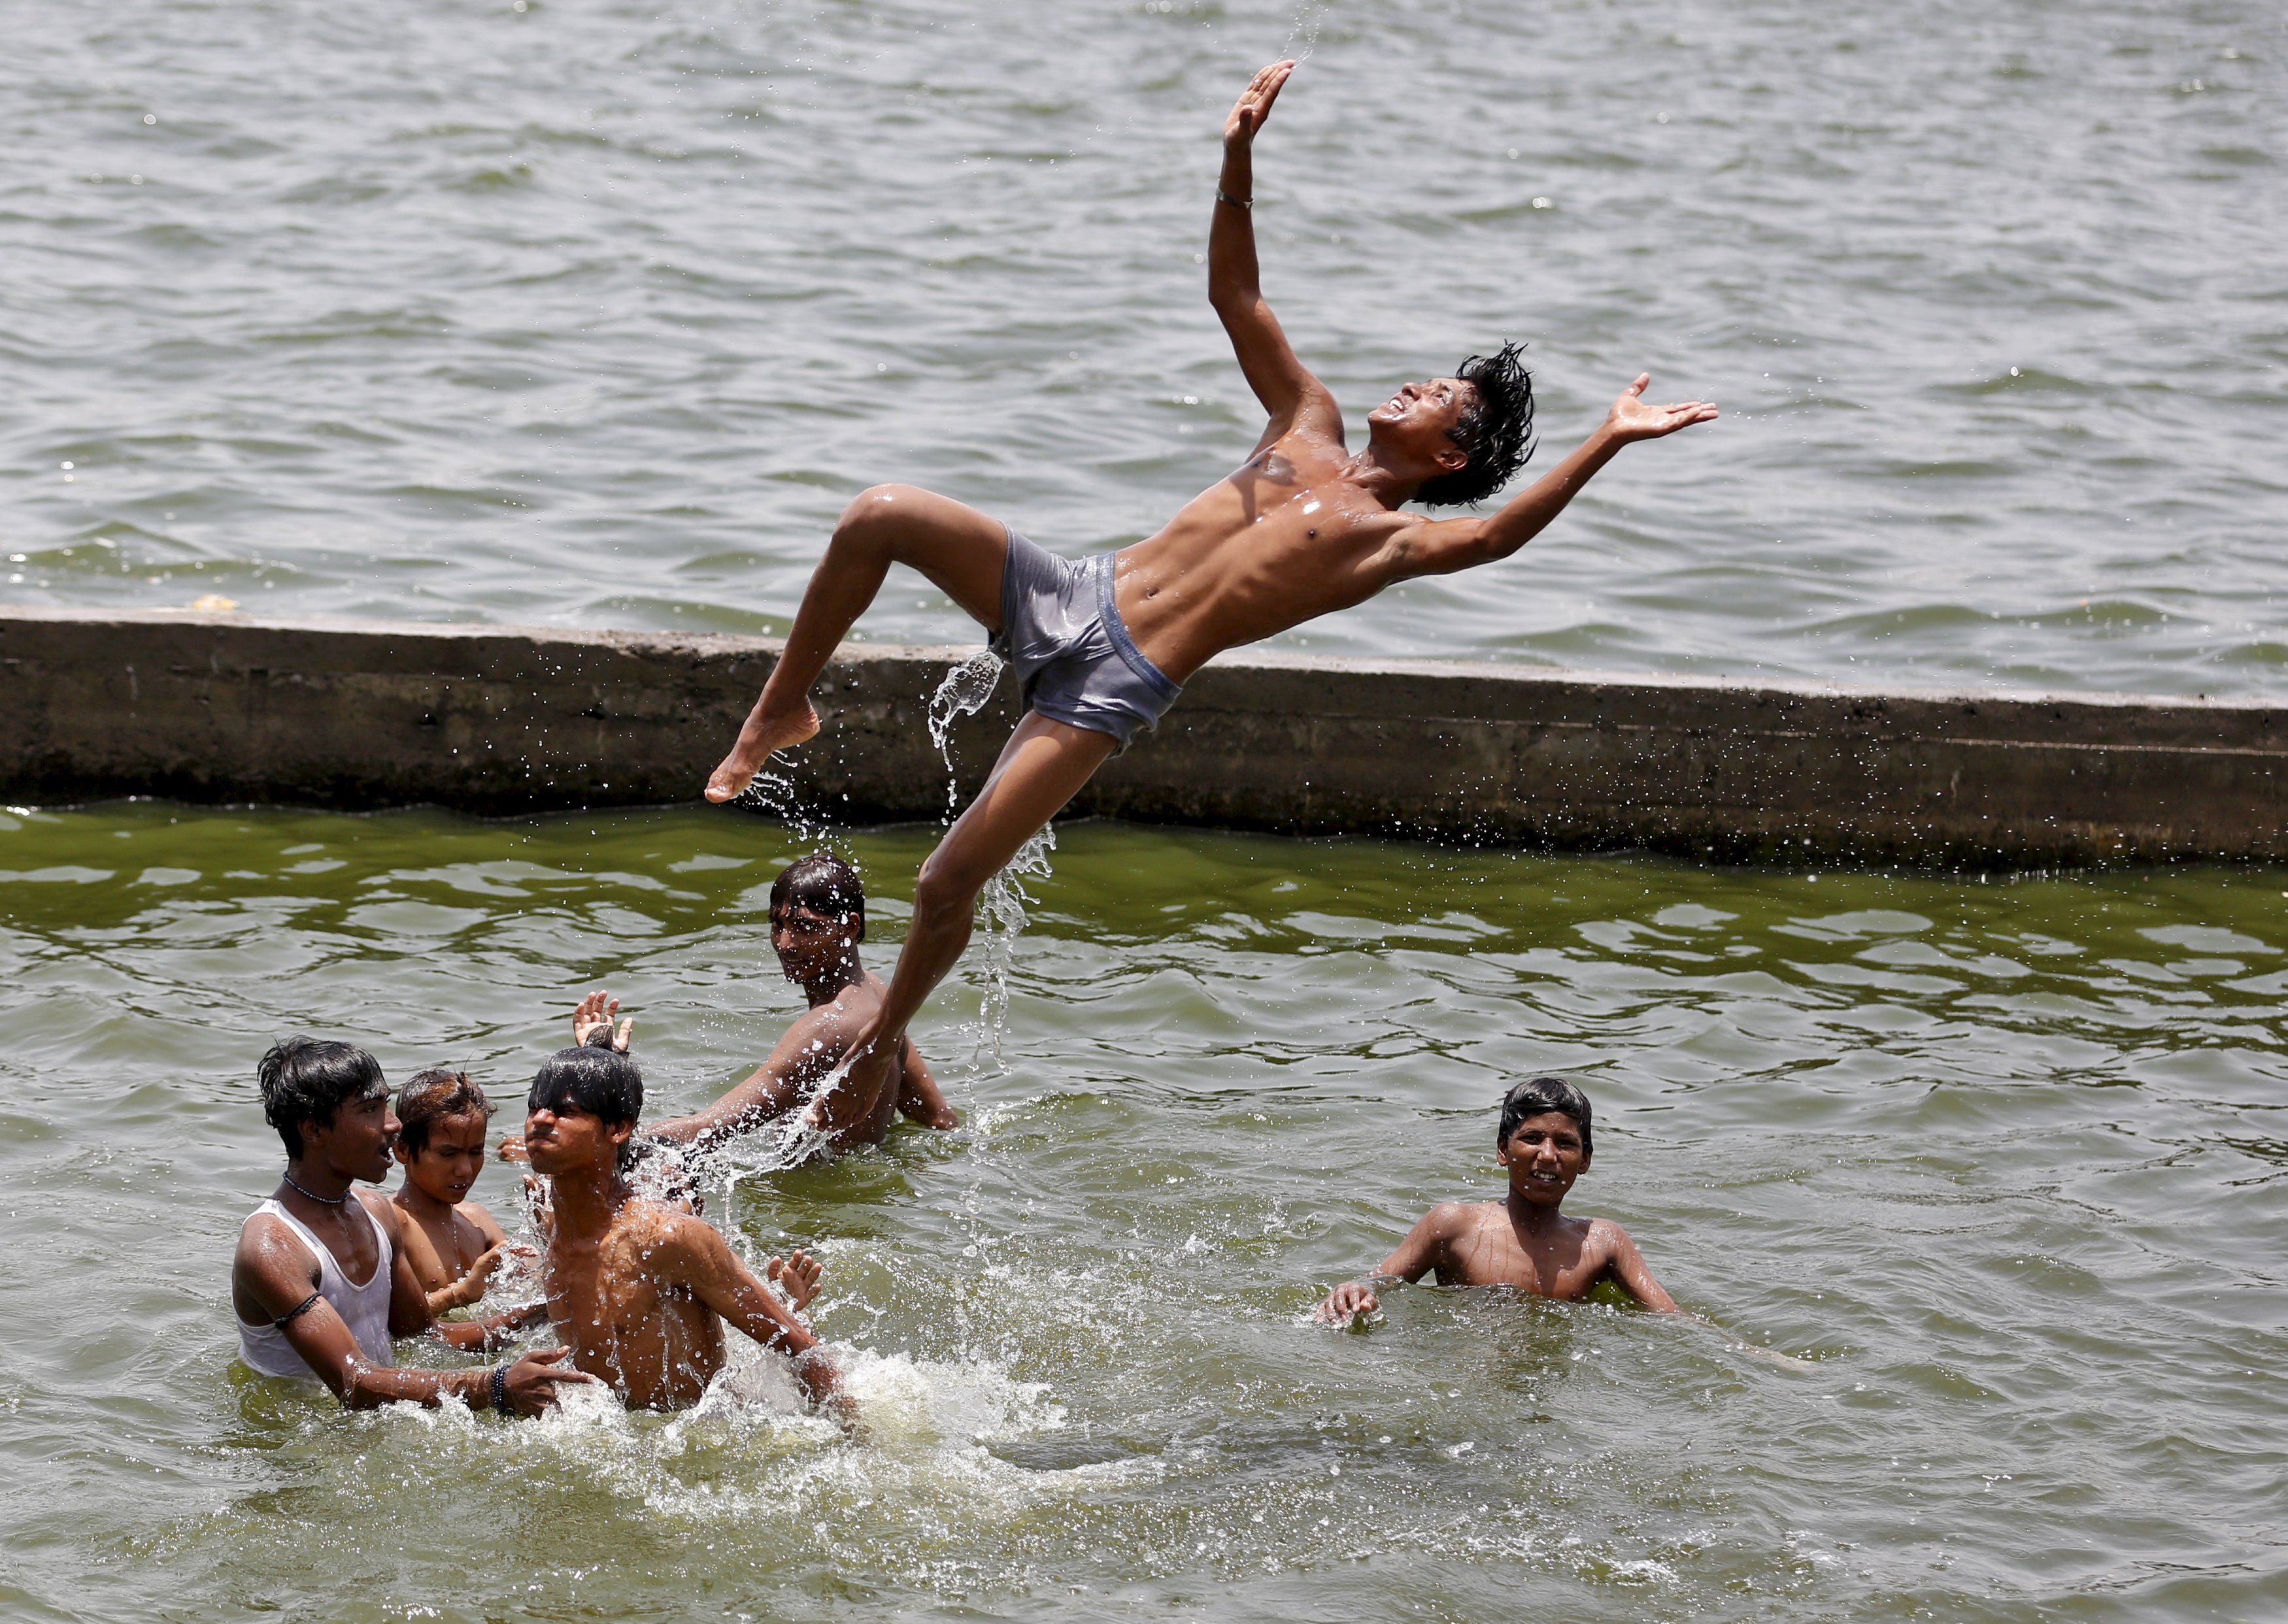 Зеленый купаться. Мальчики на речке. Мальчики купаются в реке. Индия мальчики купаются.